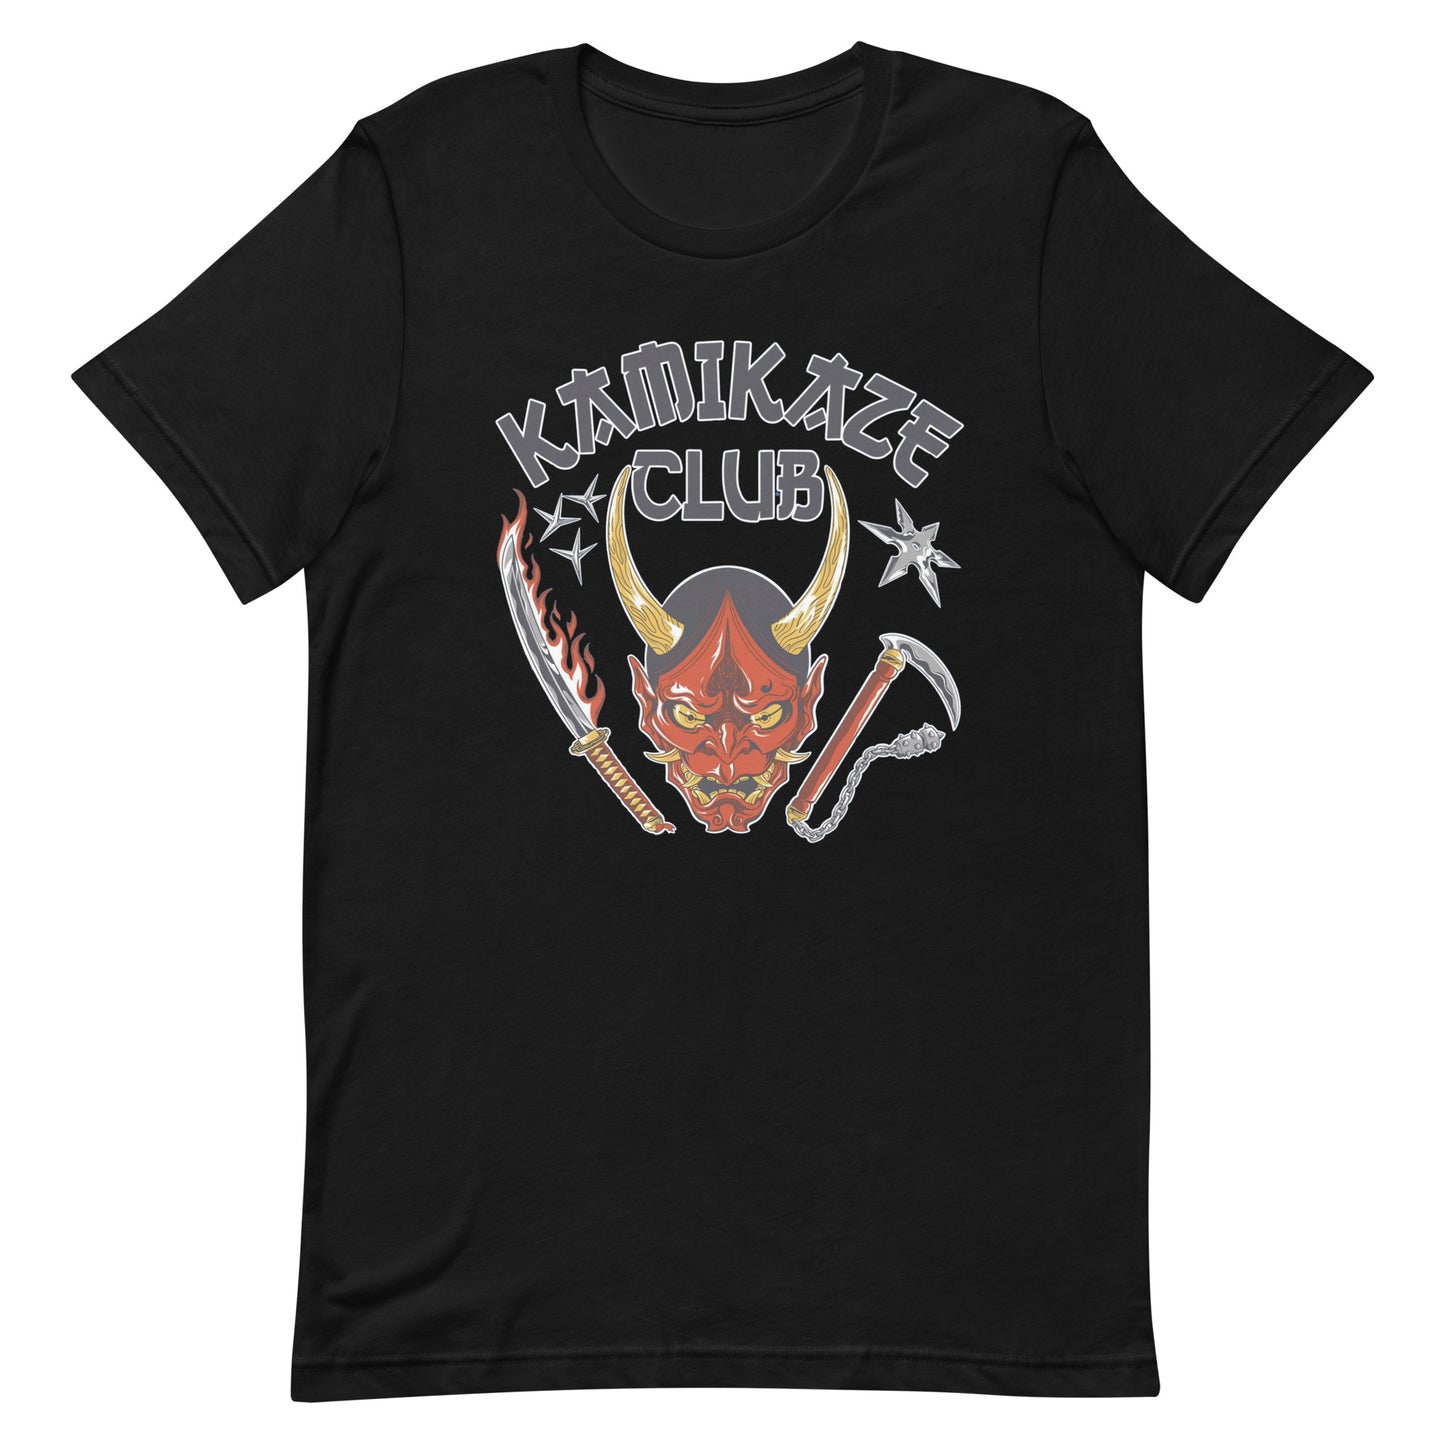 ¡Compra el mejor merchandising en Superstar! Encuentra diseños únicos y de alta calidad en playeras, Camiseta Kamikaze Club